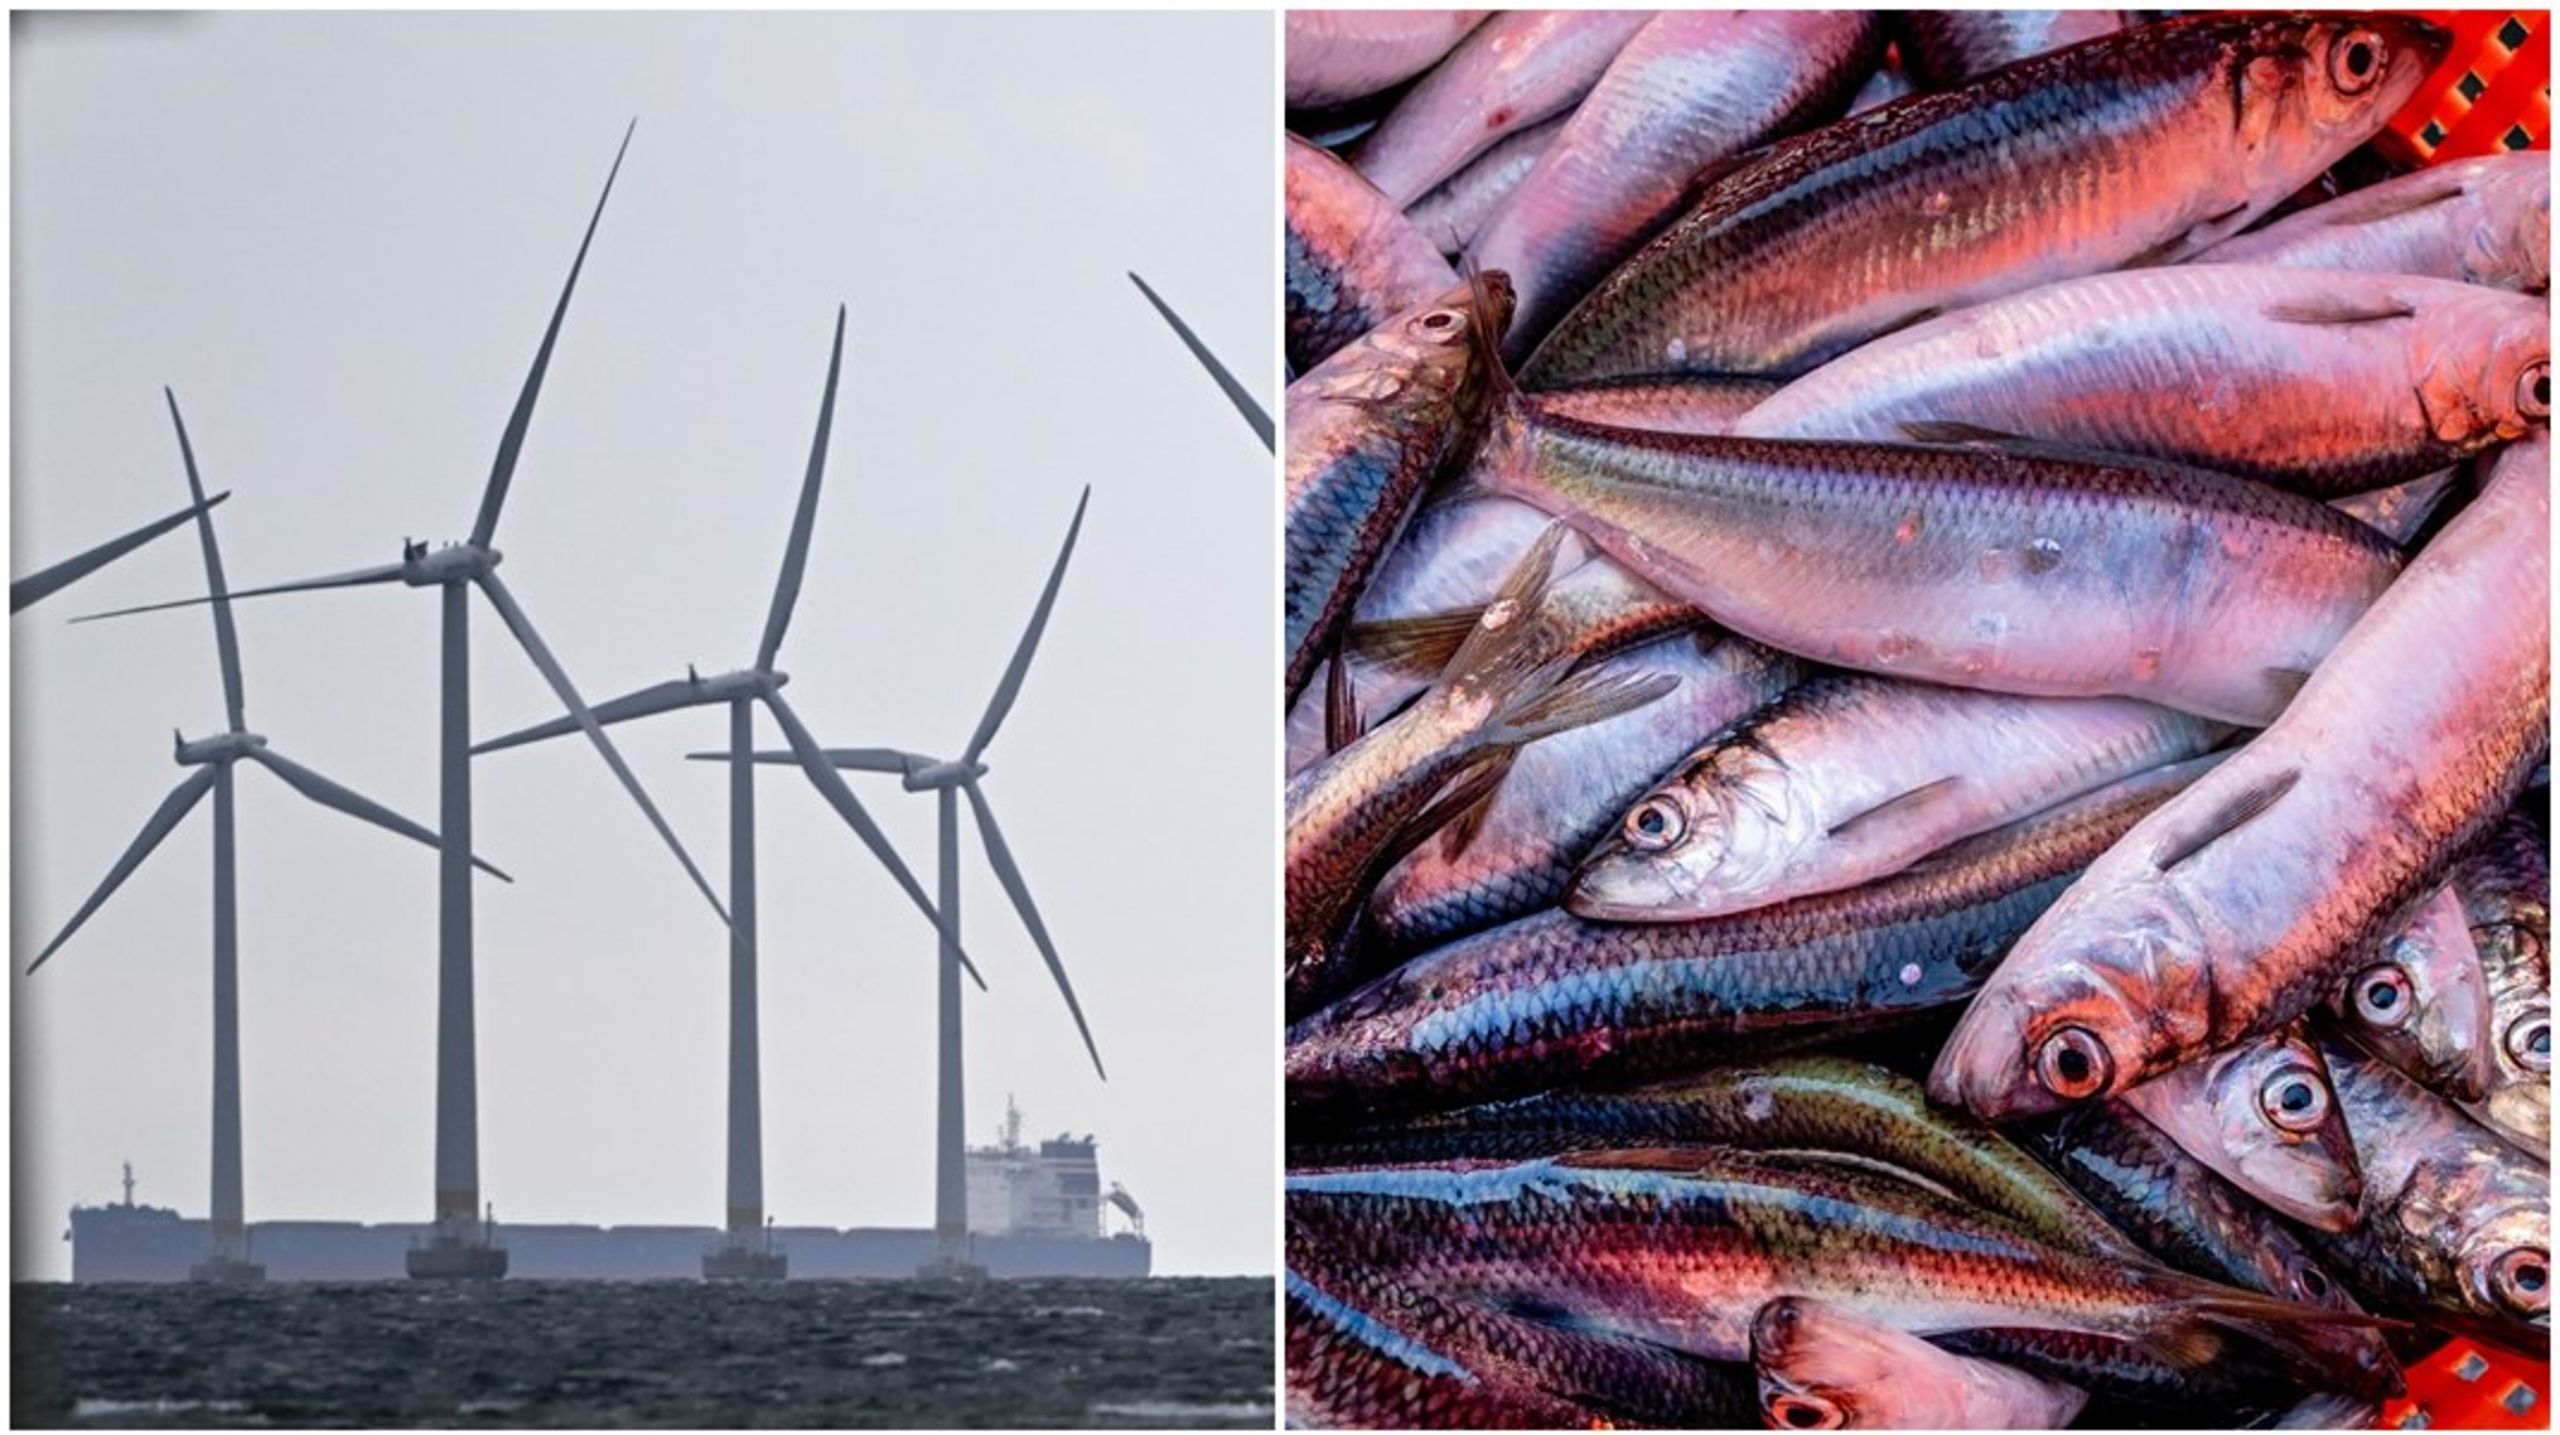 Att beskylla vindkraften för att hota fisket avleder uppmärksamheten från mer pressande frågor som överfiske och miljöförstöring, skriver debattören.